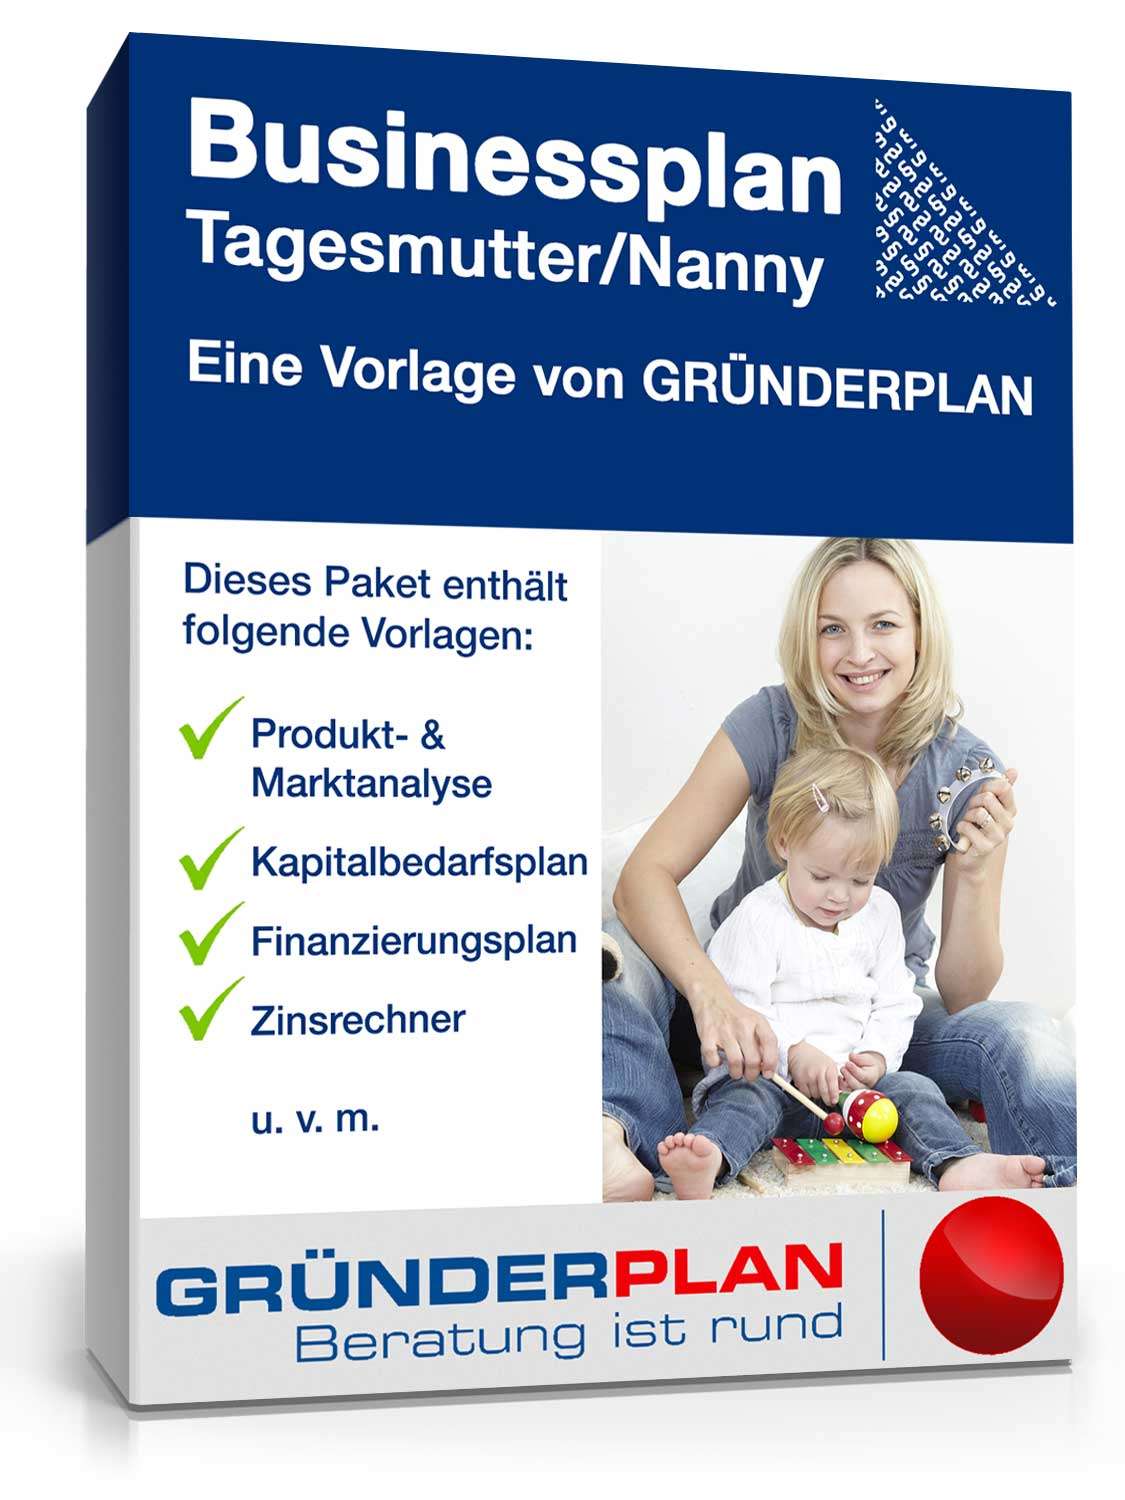 Hauptbild des Produkts: Businessplan Tagesmutter/Nanny von Gründerplan